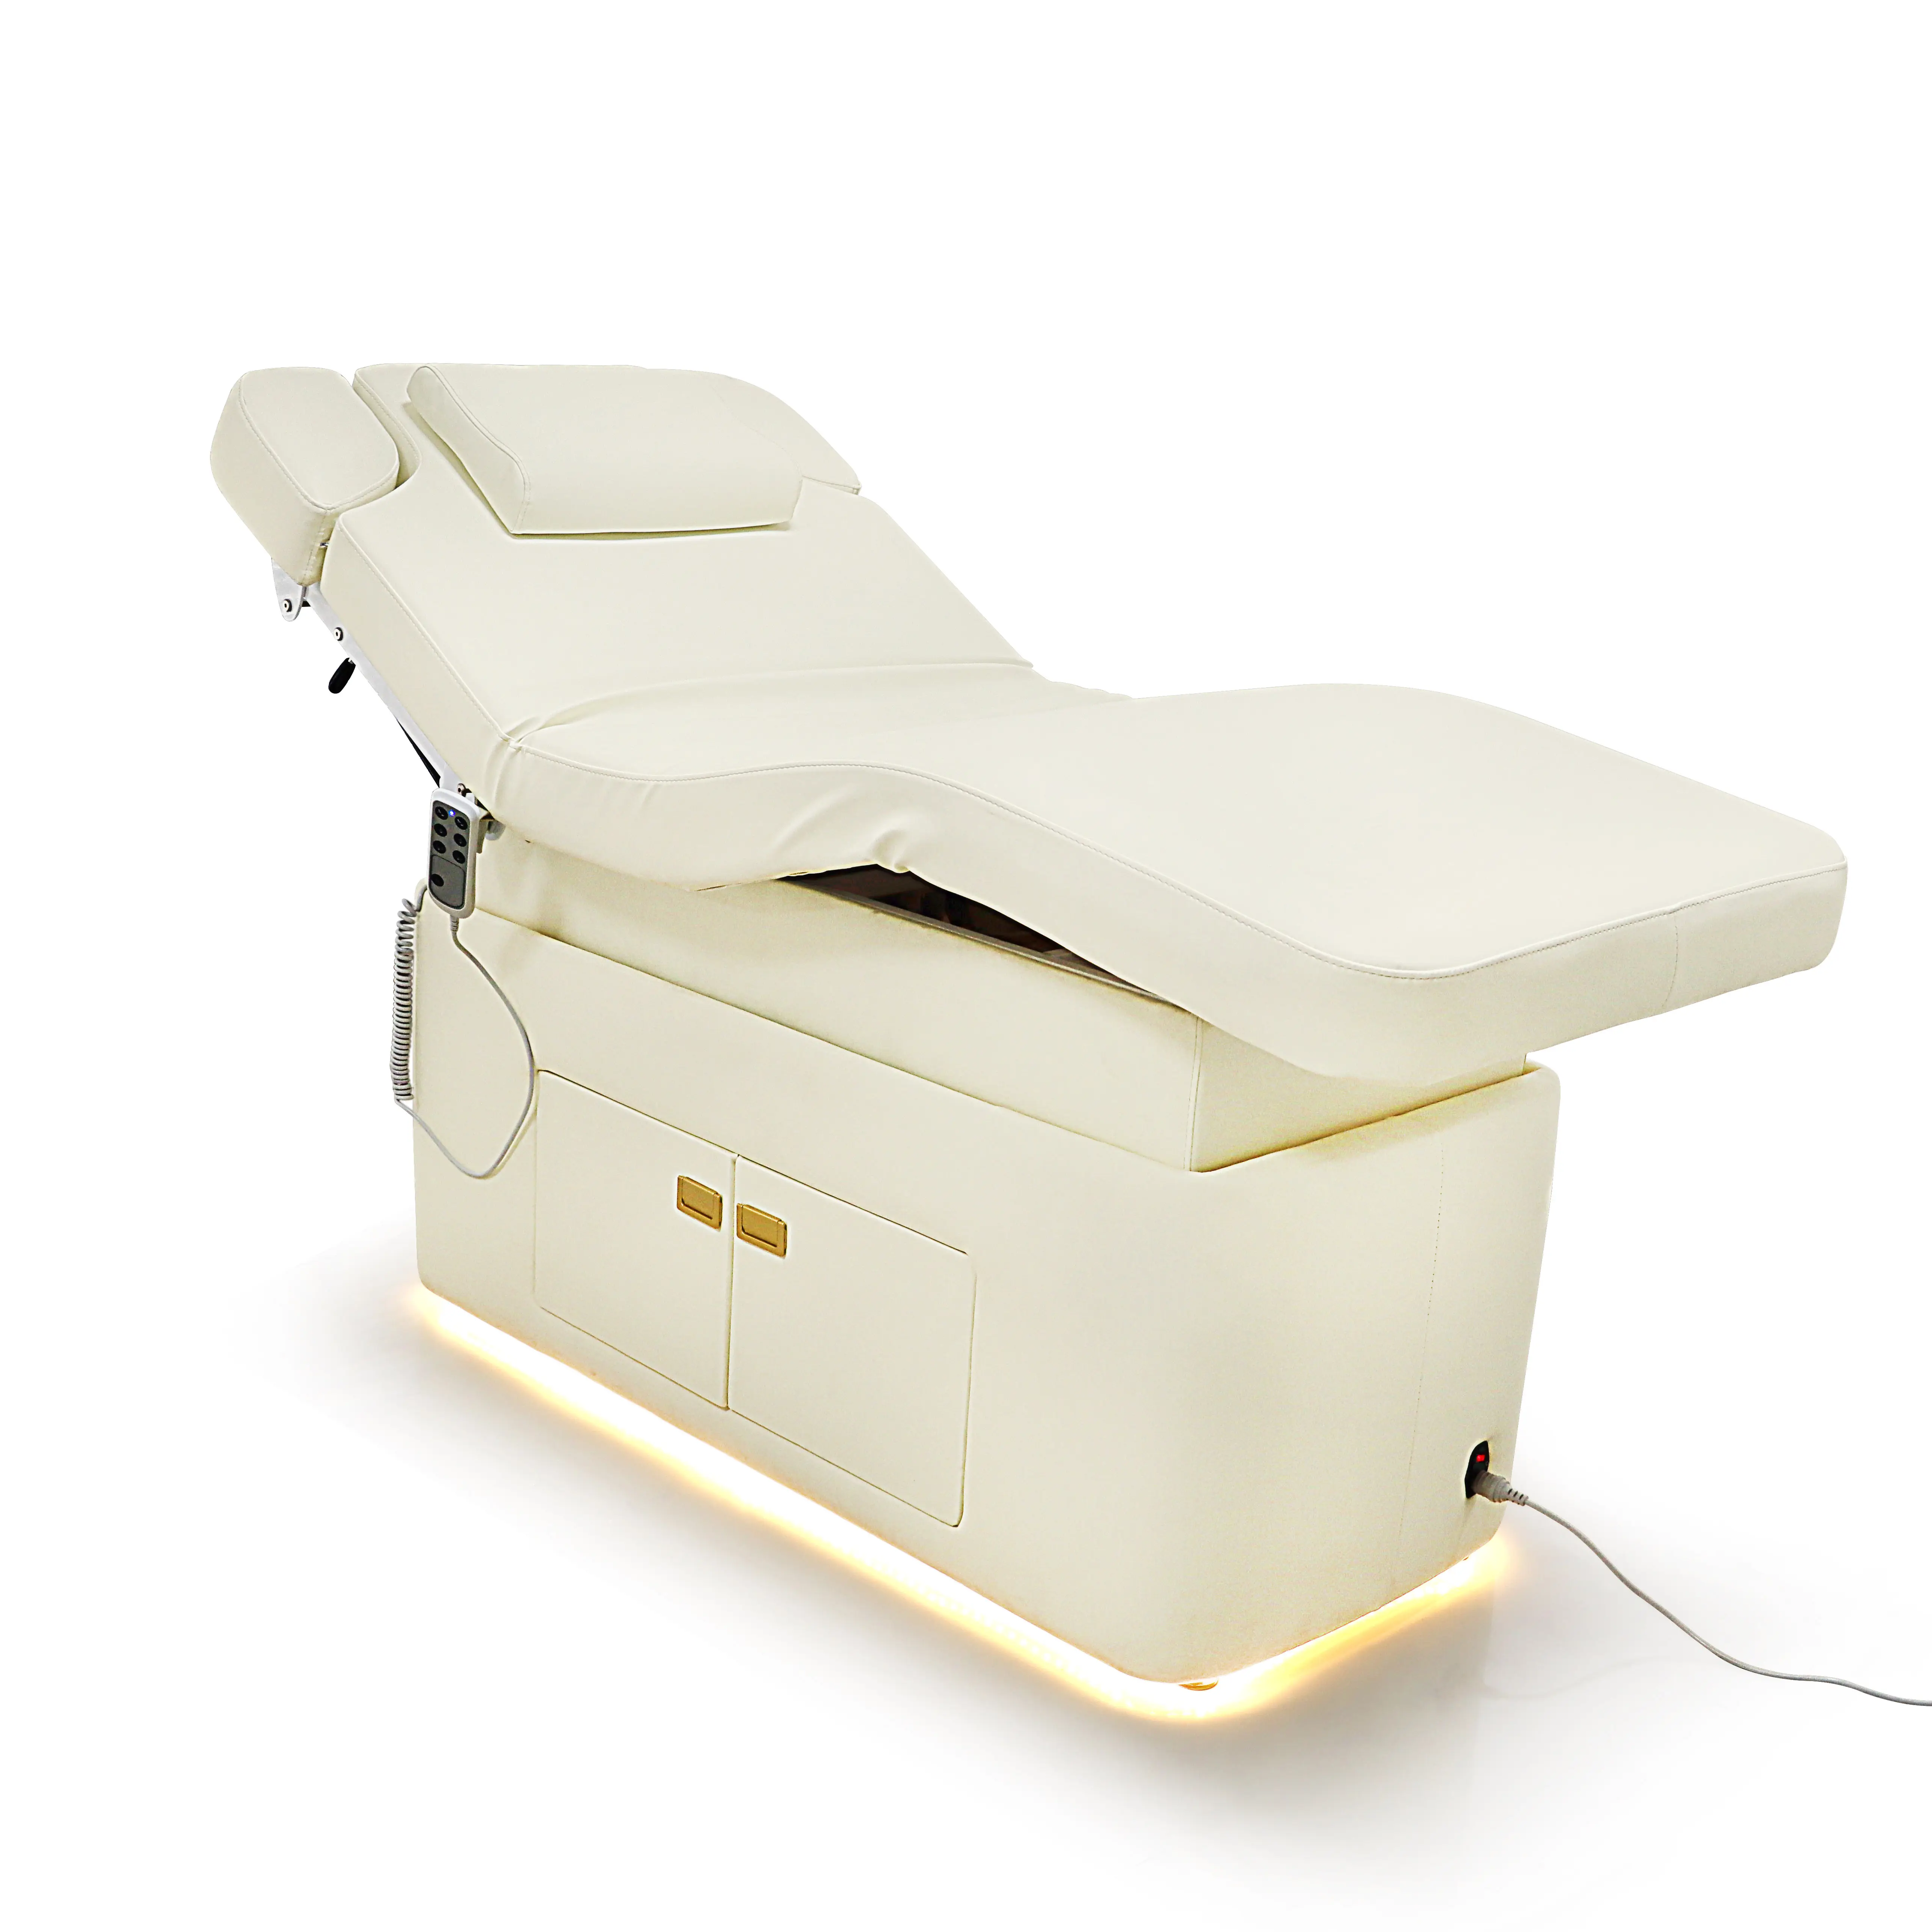 Aquecimento Cama Facial Elétrica Com Gabinete Cadeira De Beleza Mobiliário De Salão 4 Motor Lash Bed LED Light Spa Bed Mesa De Massagem